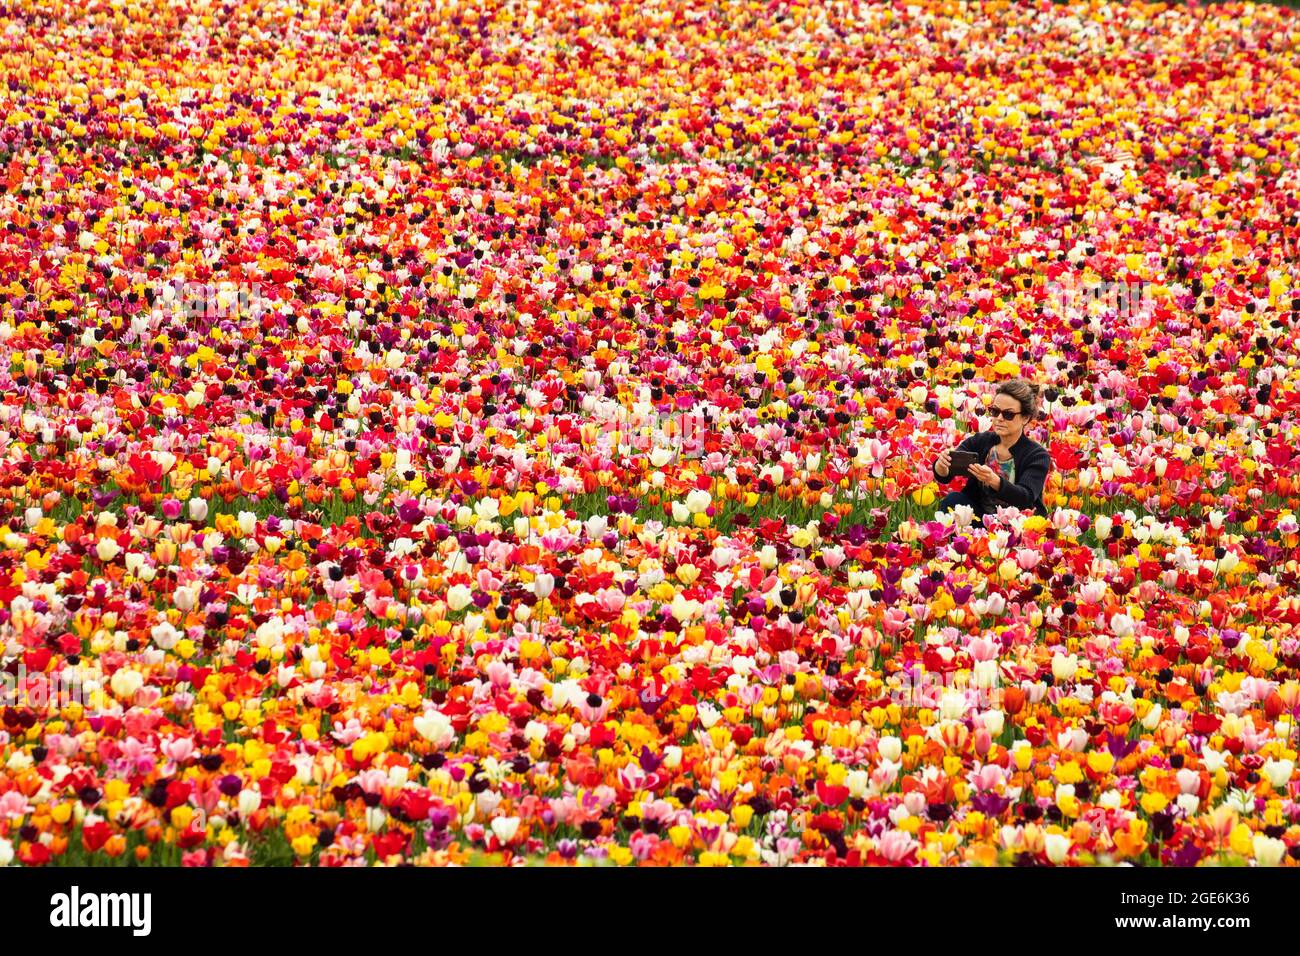 Pays-Bas, Noordwijkerhout, Tulips, champs de tulipes. Modèle libéré. Banque D'Images